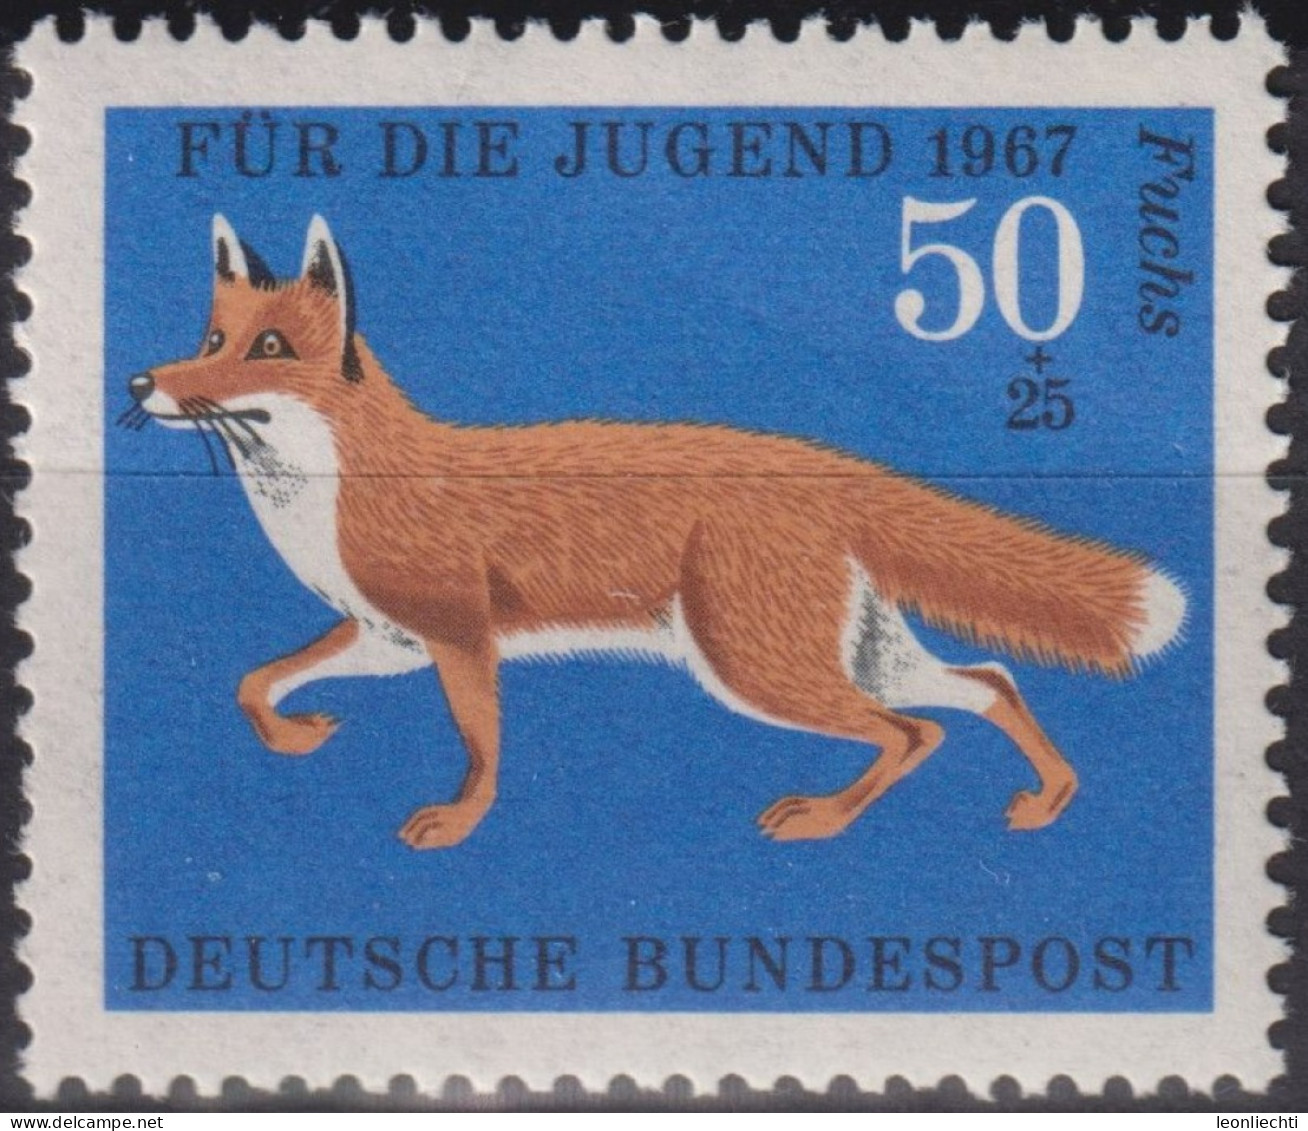 1967 Deutschland > BRD, ** Mi:DE 532, Sn:DE B425, Yt:DE 390, Fuchs, Red Fox (Vulpes Vulpes) - Selvaggina